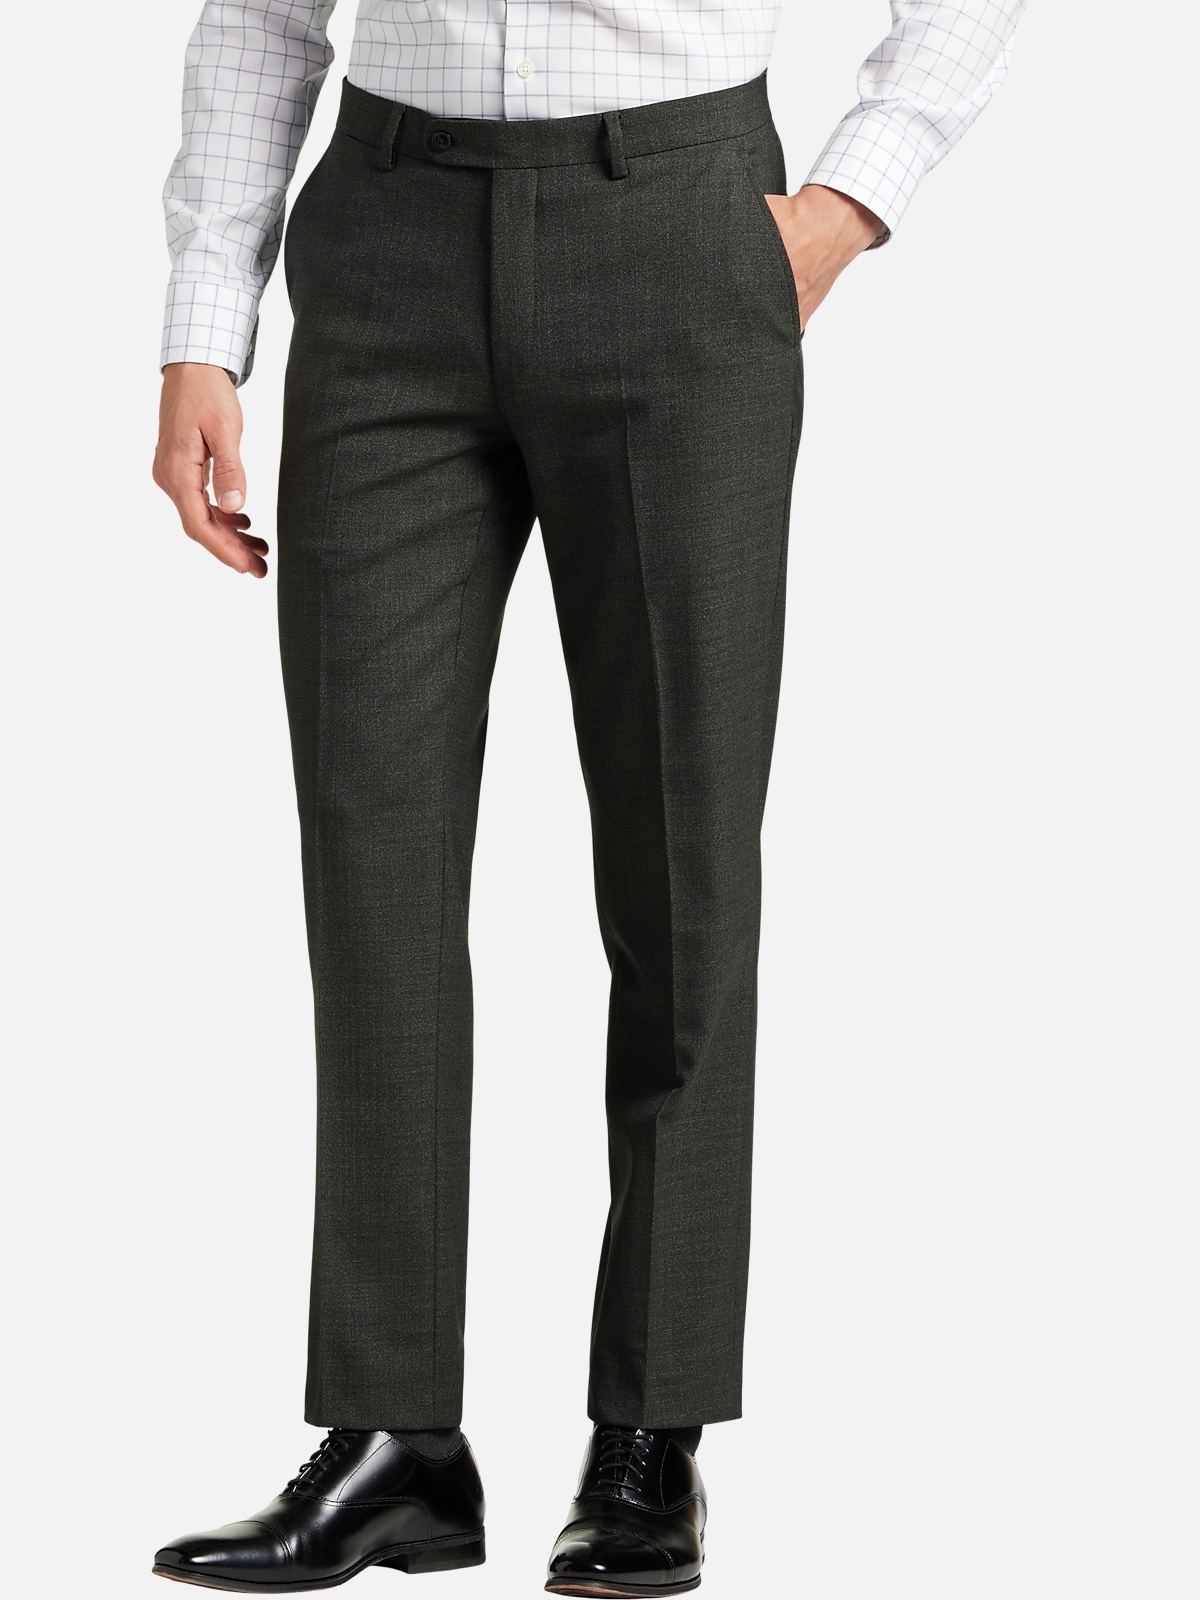 JOE Joseph Abboud Slim Fit Suit Separates Pants | All Clearance $39.99 ...